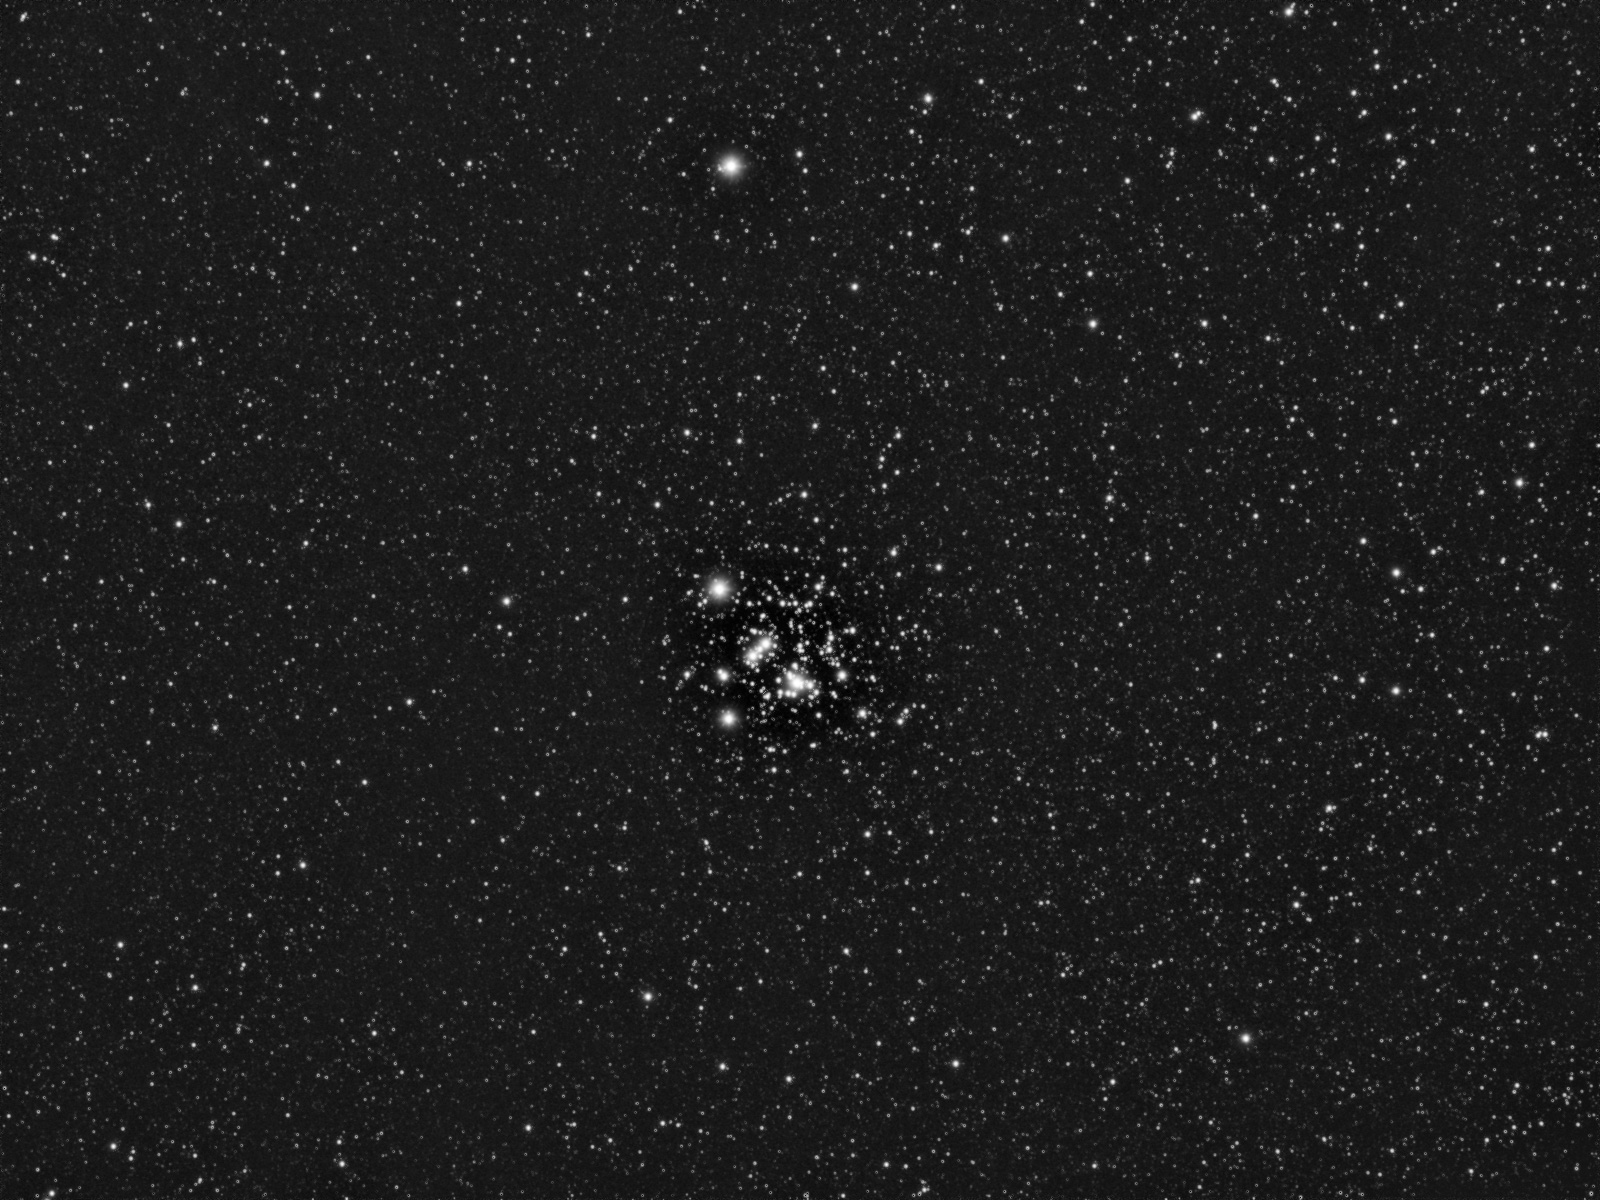 NGC 4755 or the Jewel Box